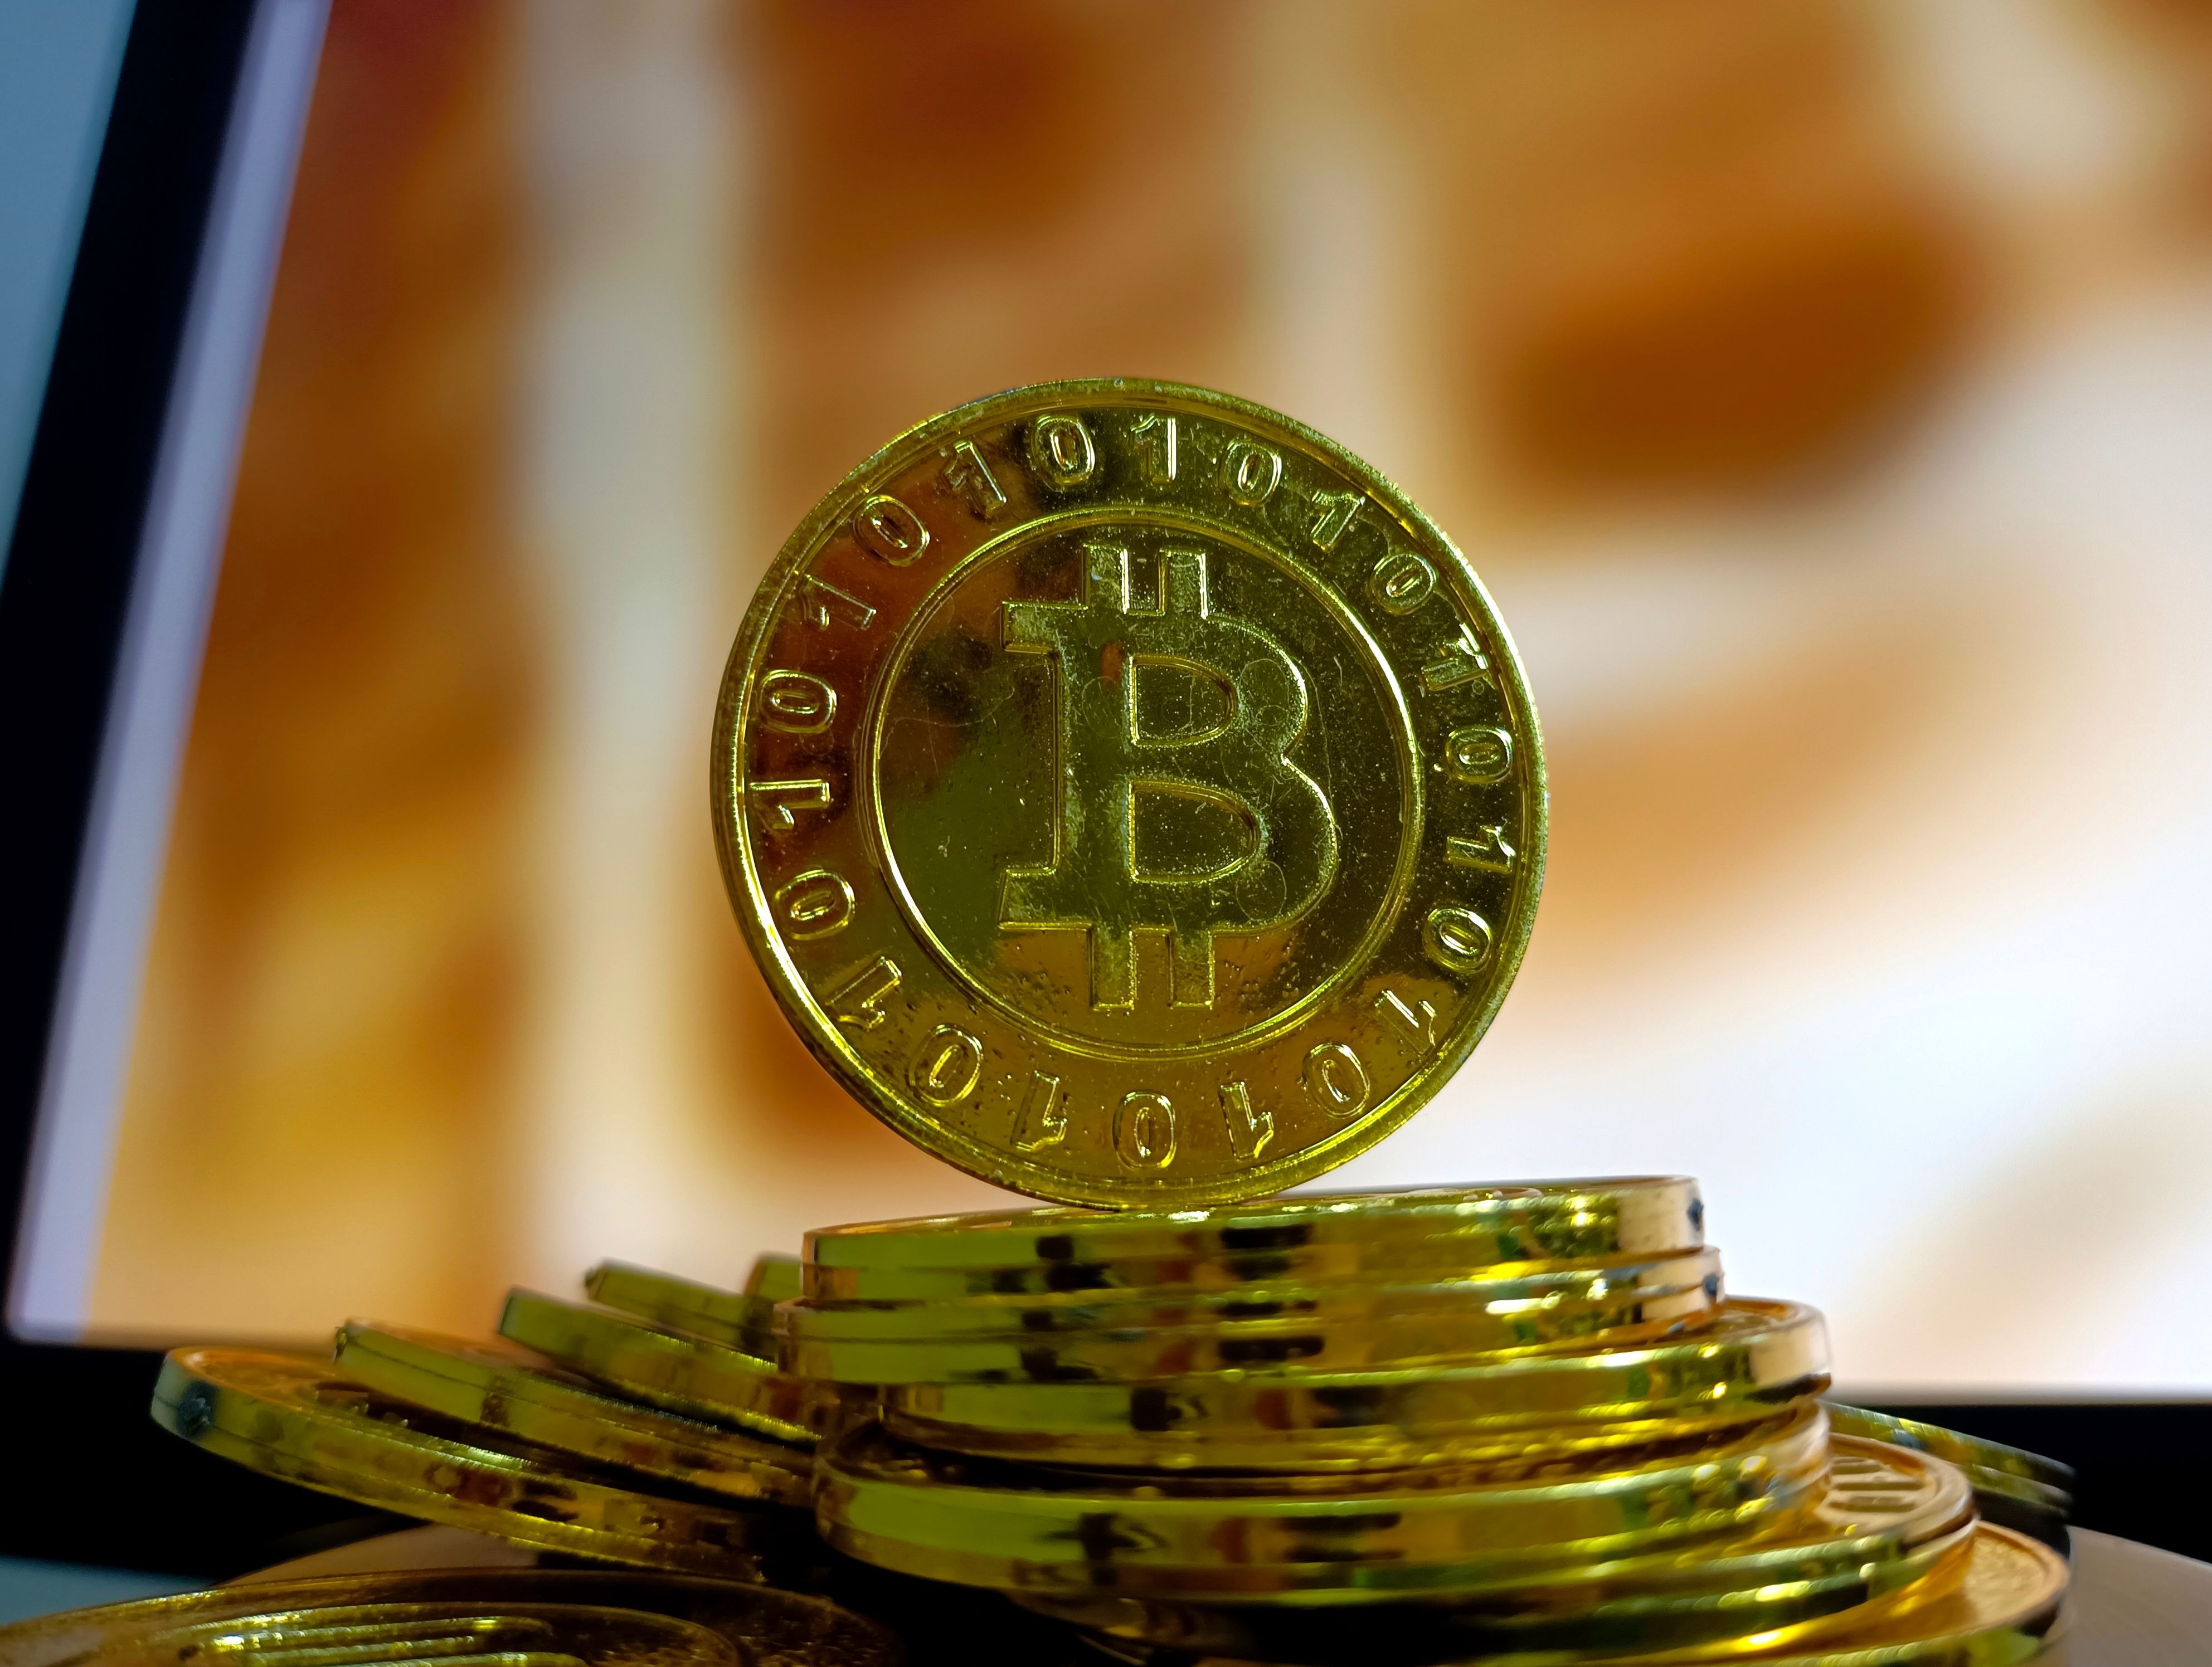 Der Preis von Bitcoin stieg gestern auf 42.000 $ (33.000 £).